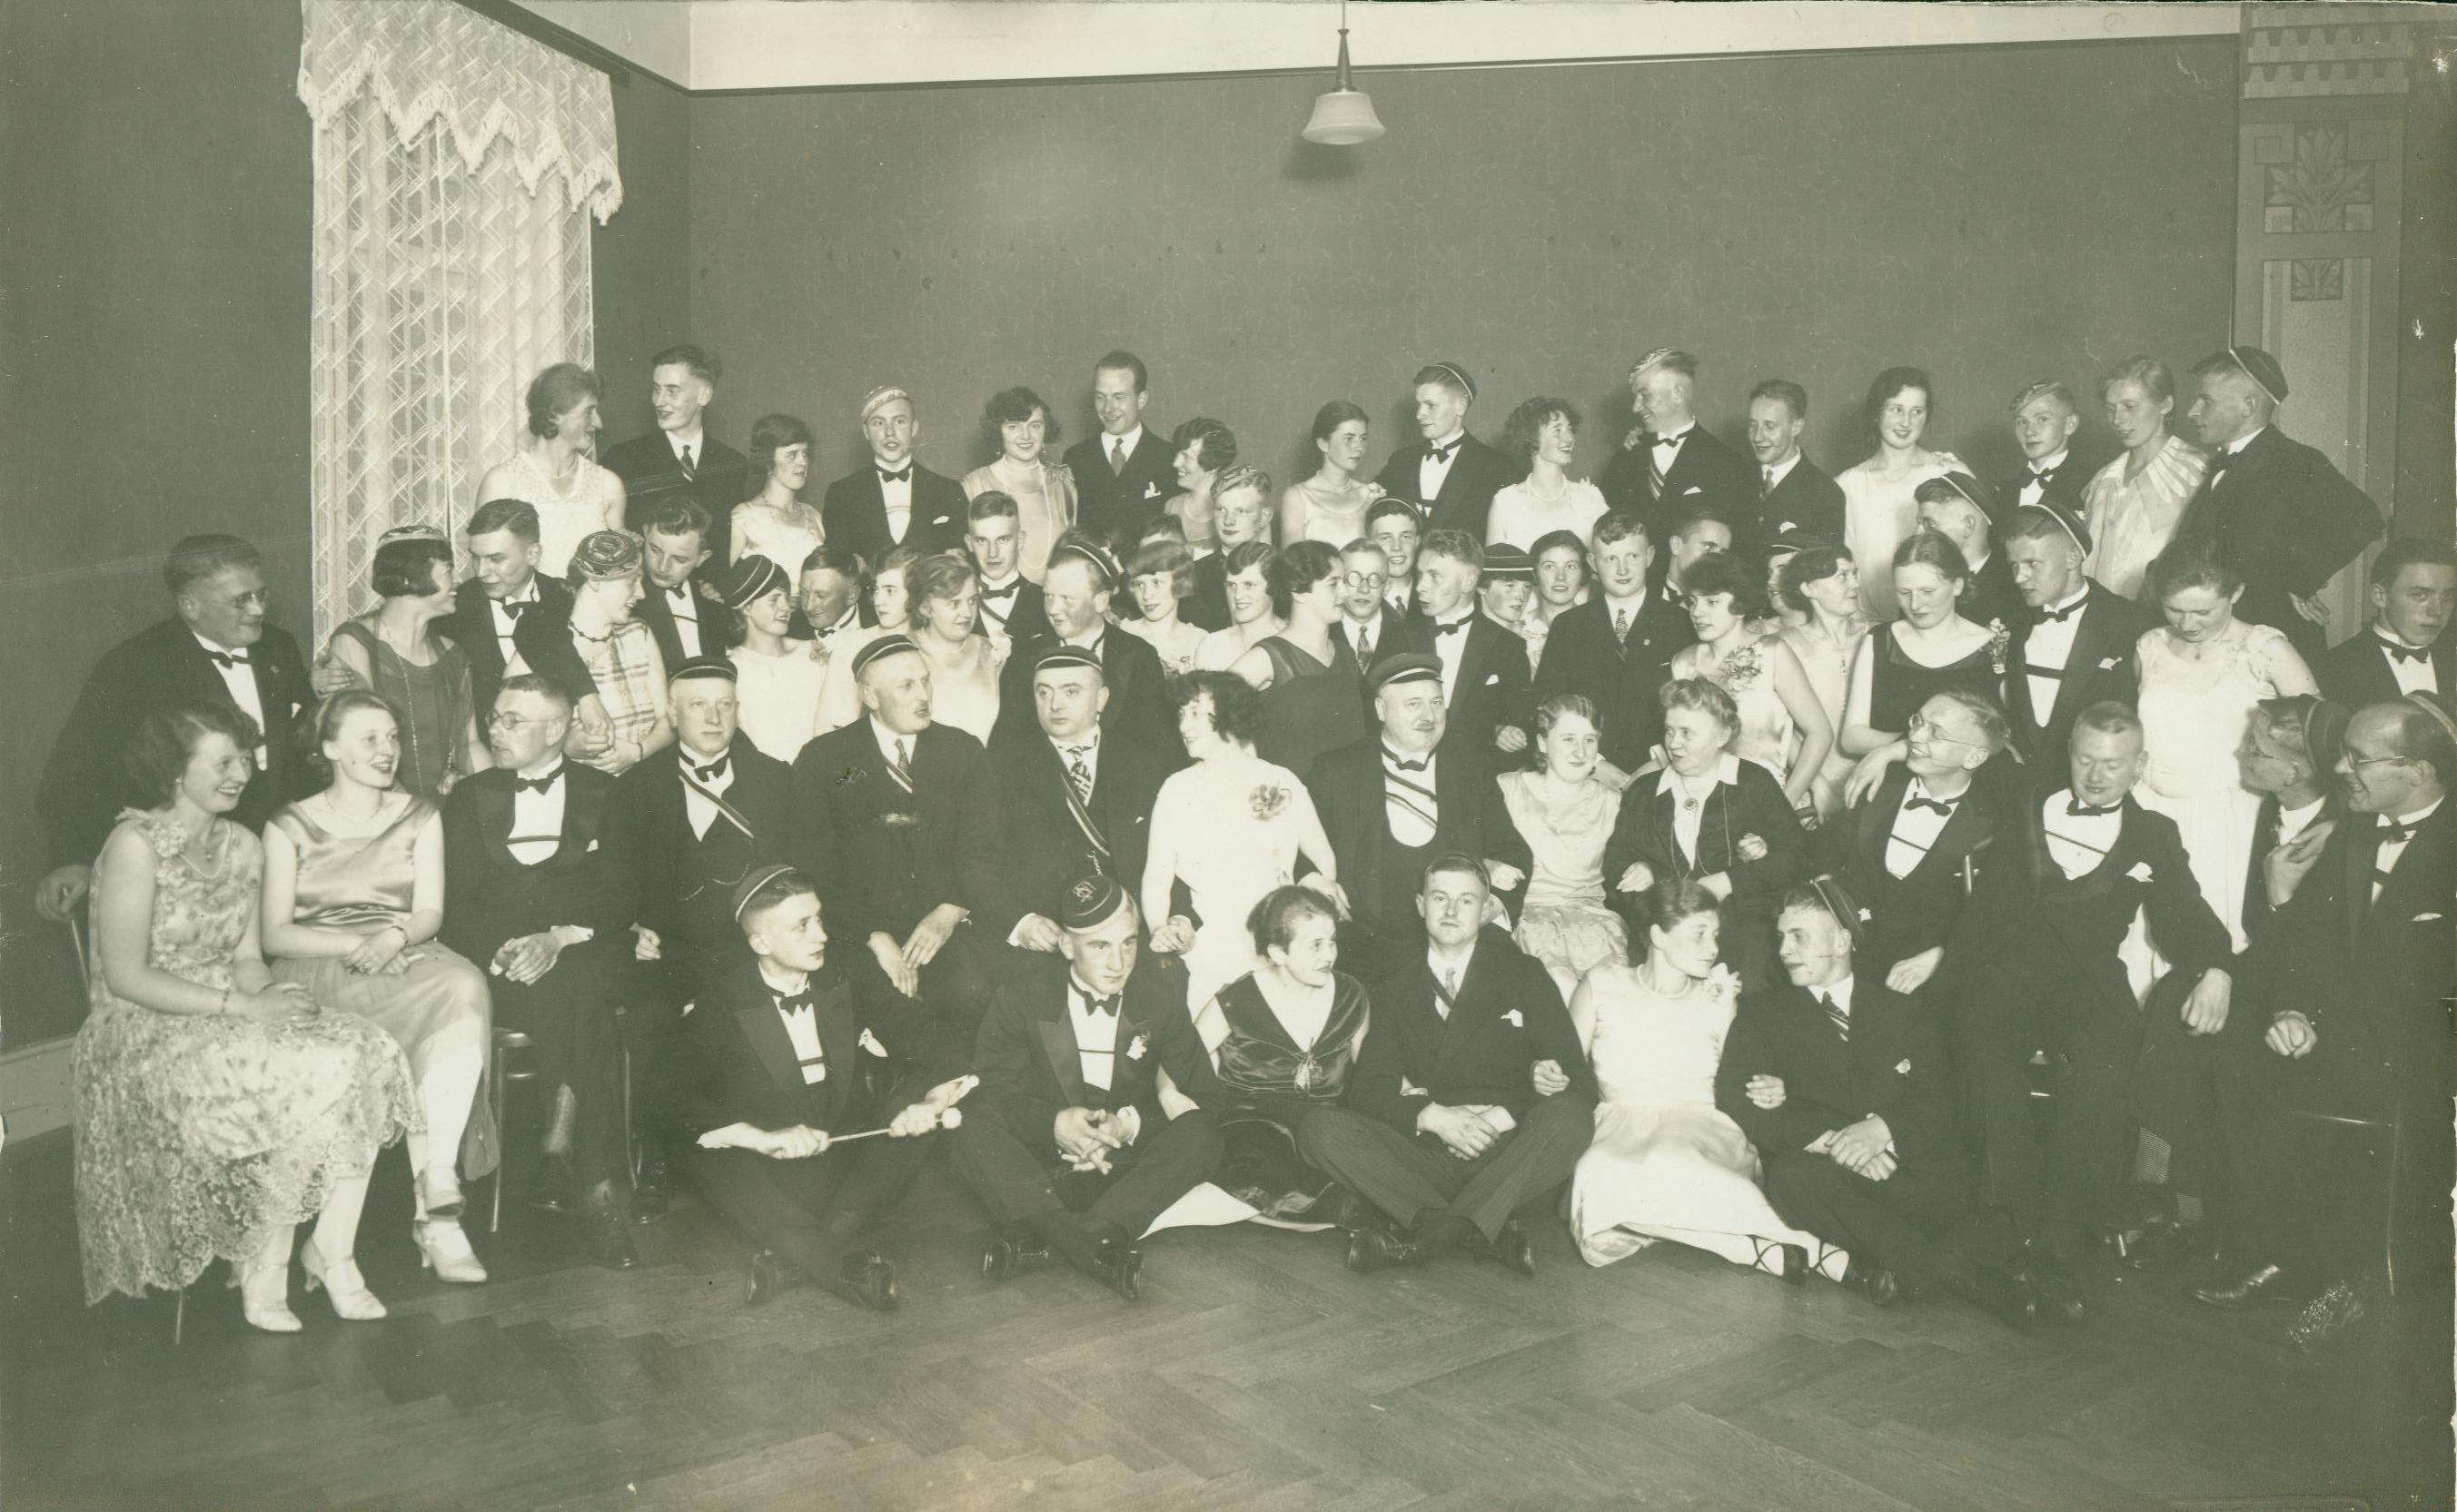 1929 - Landsmannschaft Nassovia Bonn in der Lese